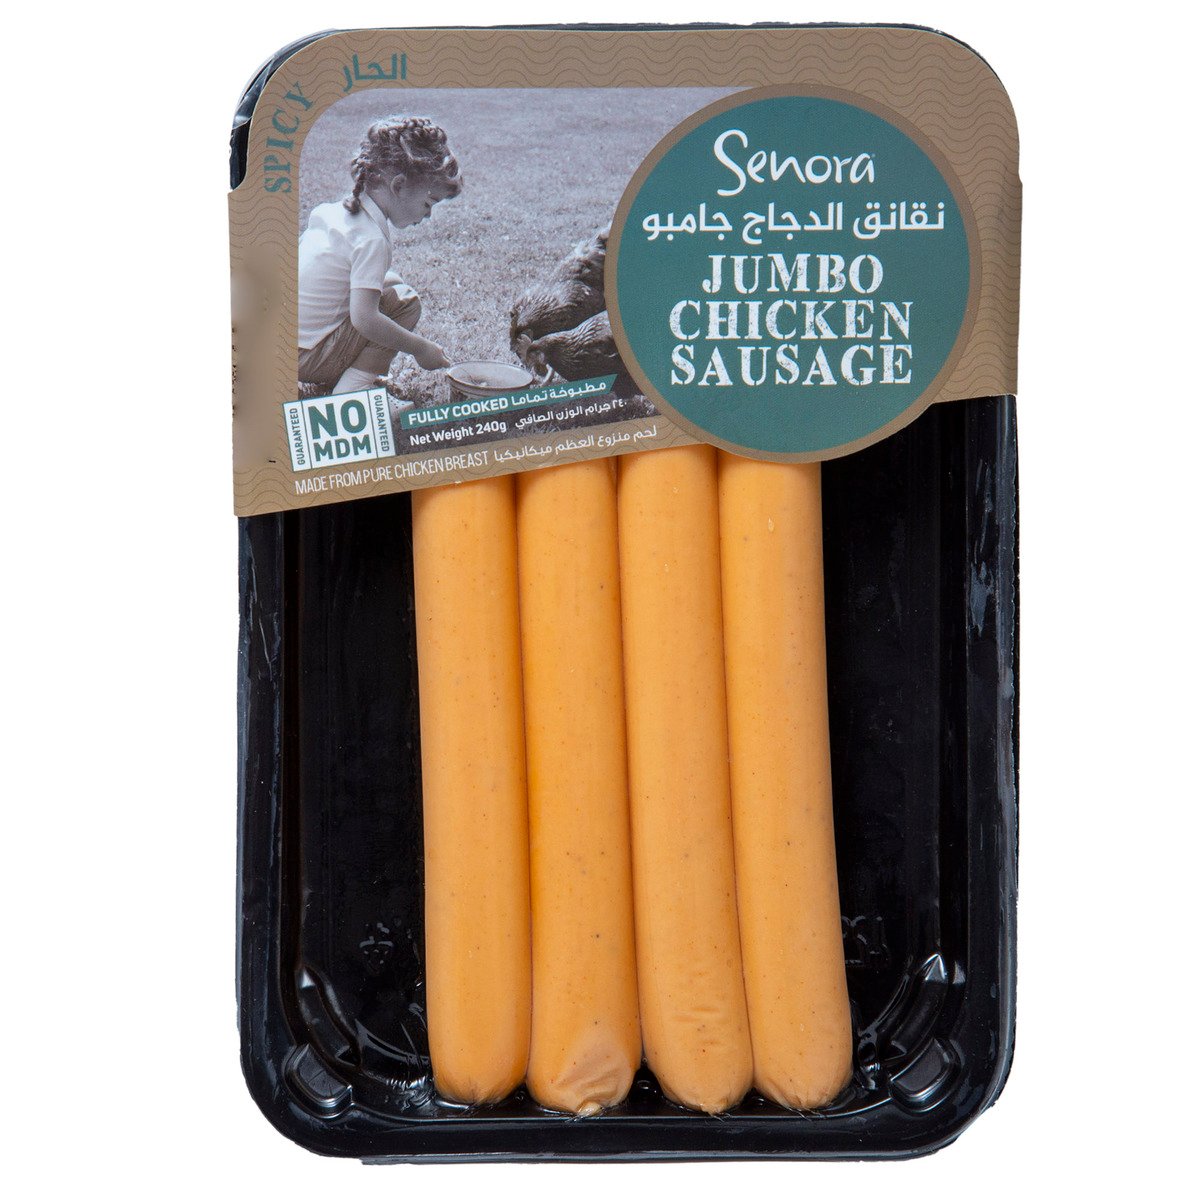 Senora Jumbo Spicy Chicken Sausage 240 g